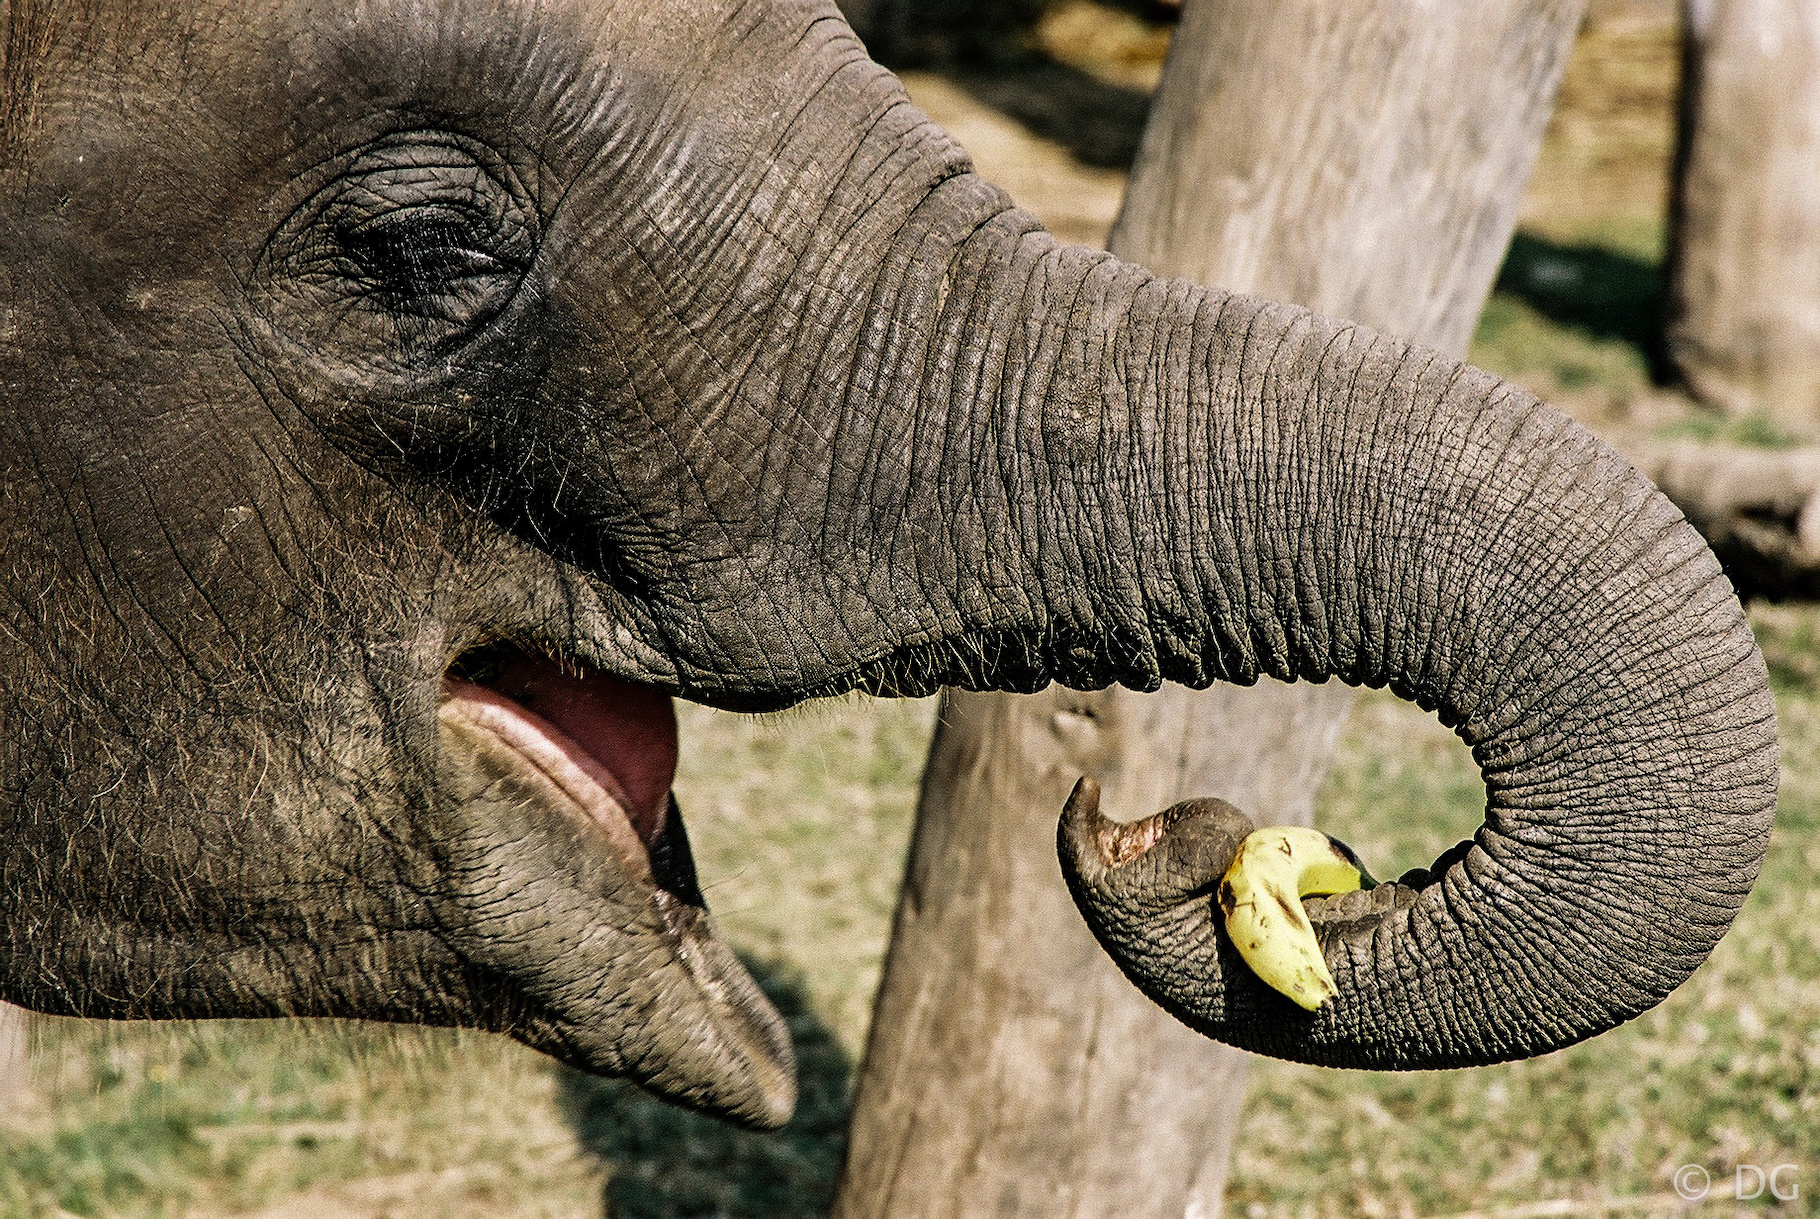 À la surprise des chercheurs, une éléphante du zoo de Berlin (Allemagne) a appris à éplucher des bananes. © David guinaldo, EyeEm, Adobe Stock